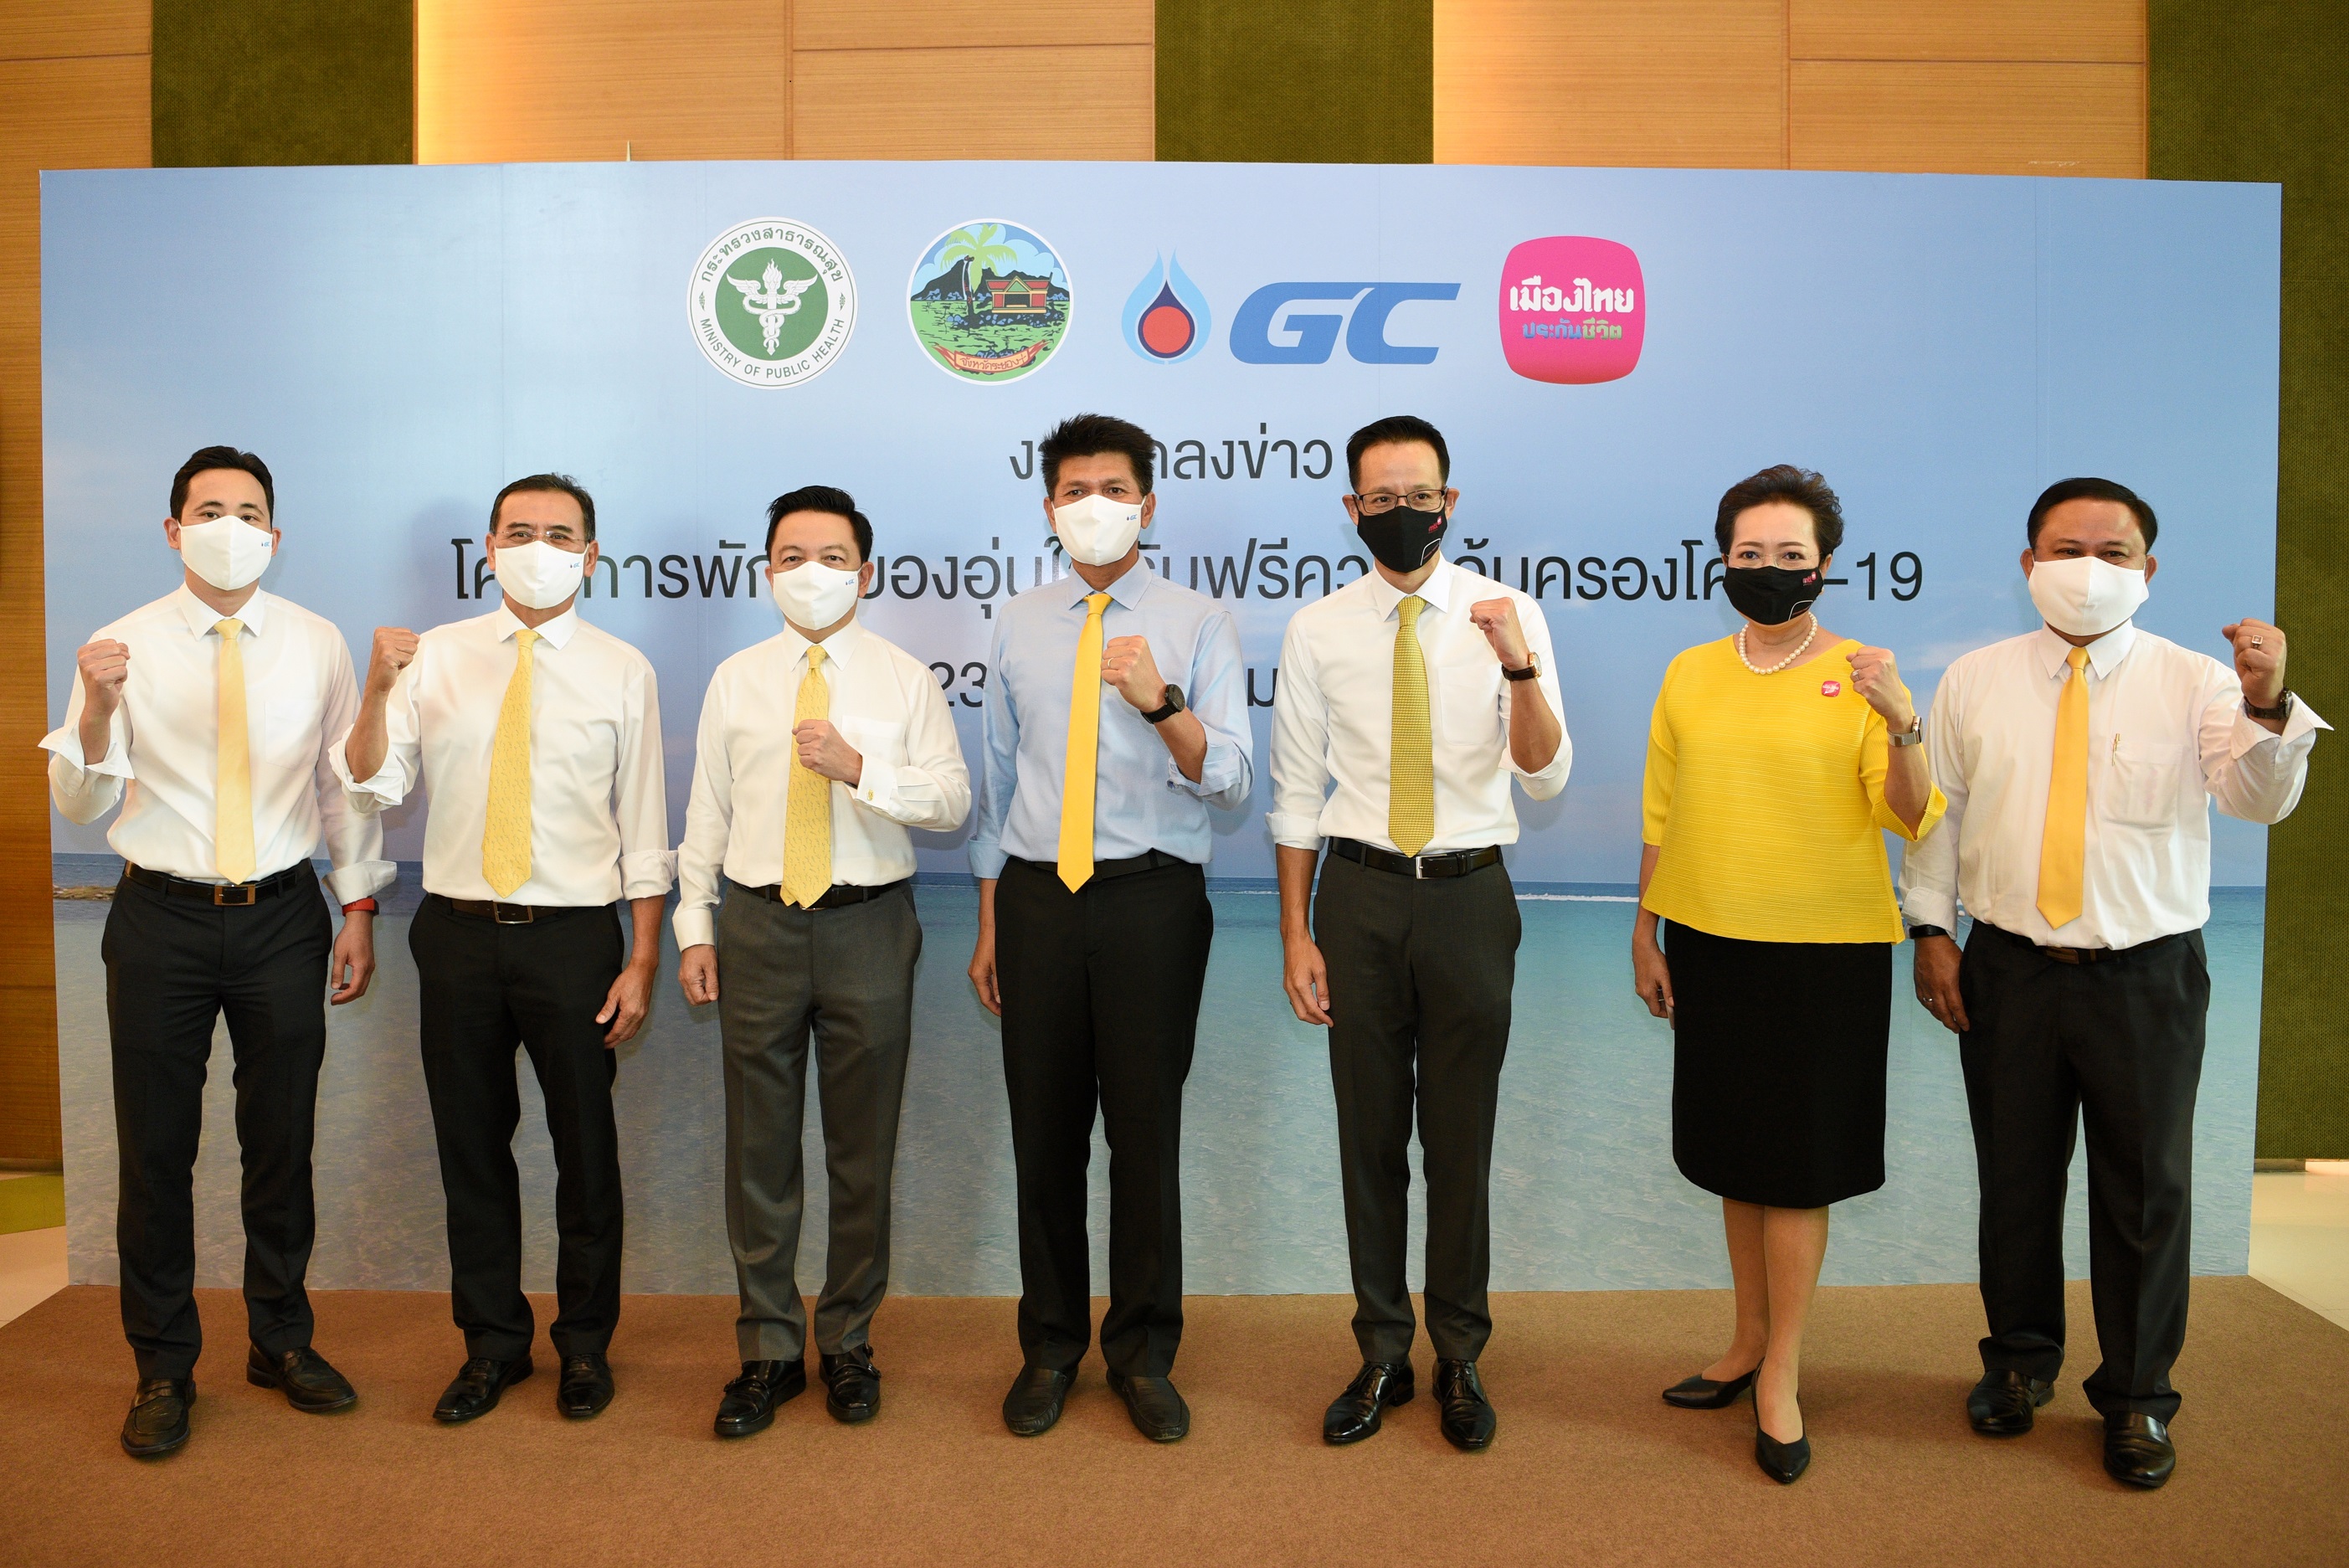 GC จับมือ เมืองไทยประกันชีวิต ร่วมกับภาครัฐ แถลงข่าวโครงการพักระยองอุ่นใจ รับฟรีความคุ้มครองโควิด-19 ท่องเที่ยวอย่างสบายใจในจังหวัดระยอง